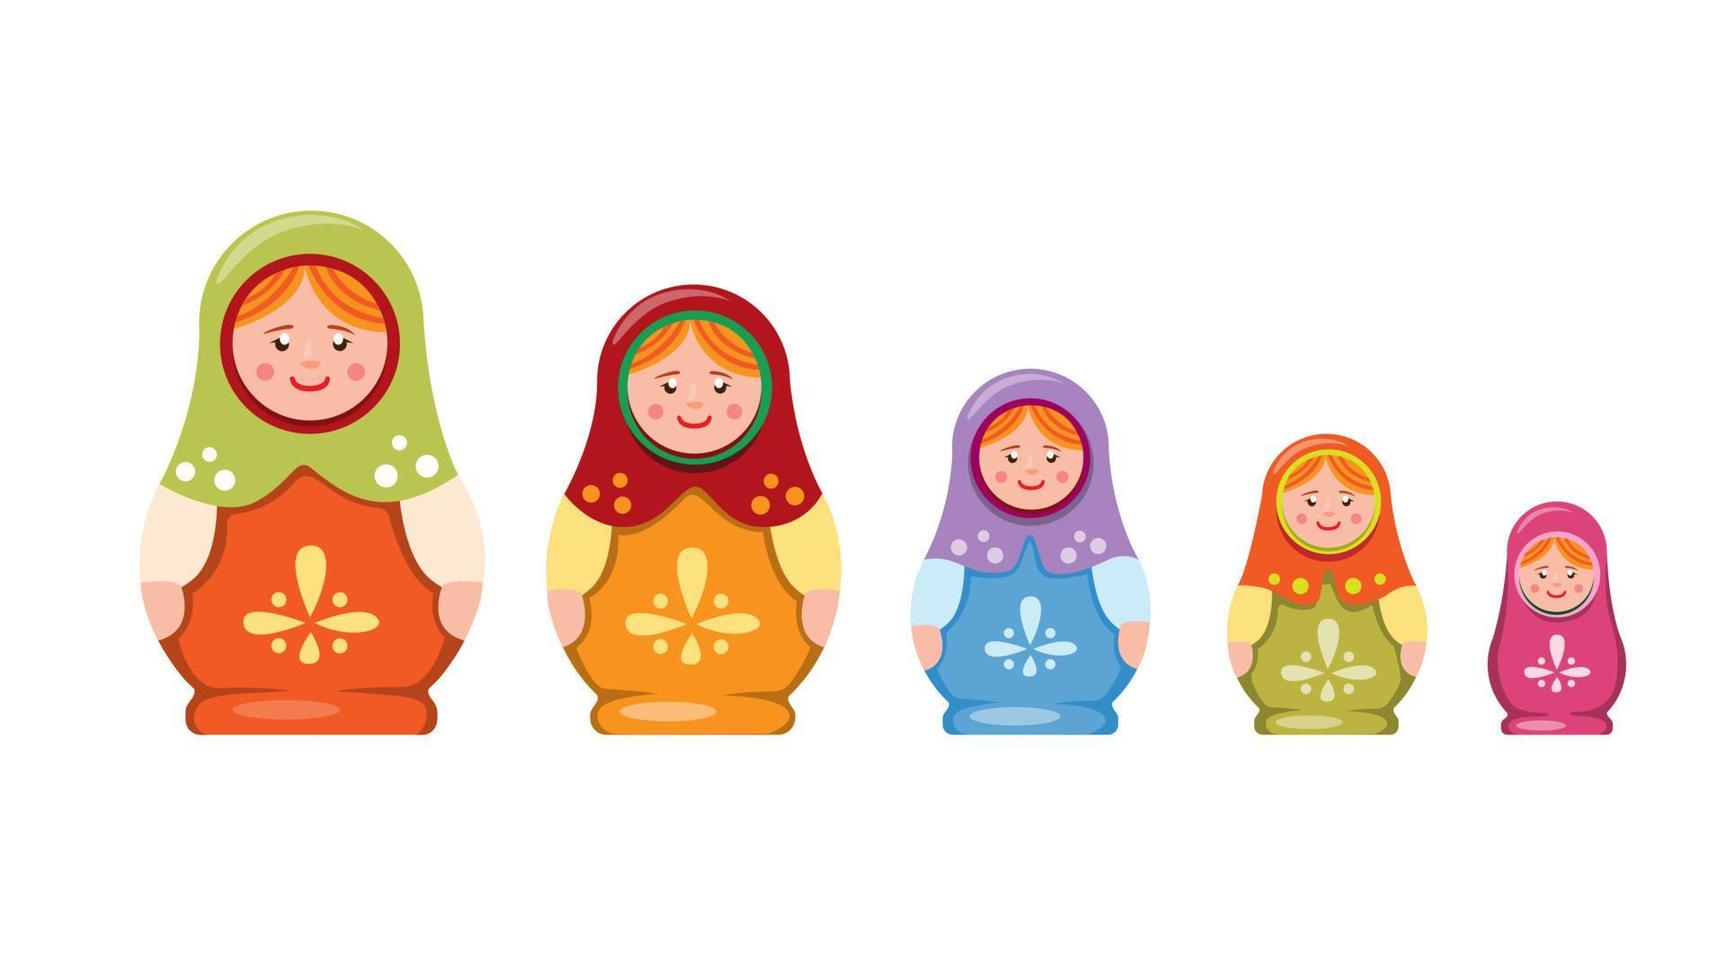 matryoshka eller babushka häckande docka. handgjord leksak souvenir traditionell från rysk samling ikonuppsättning i platt illustration vektor på vit bakgrund